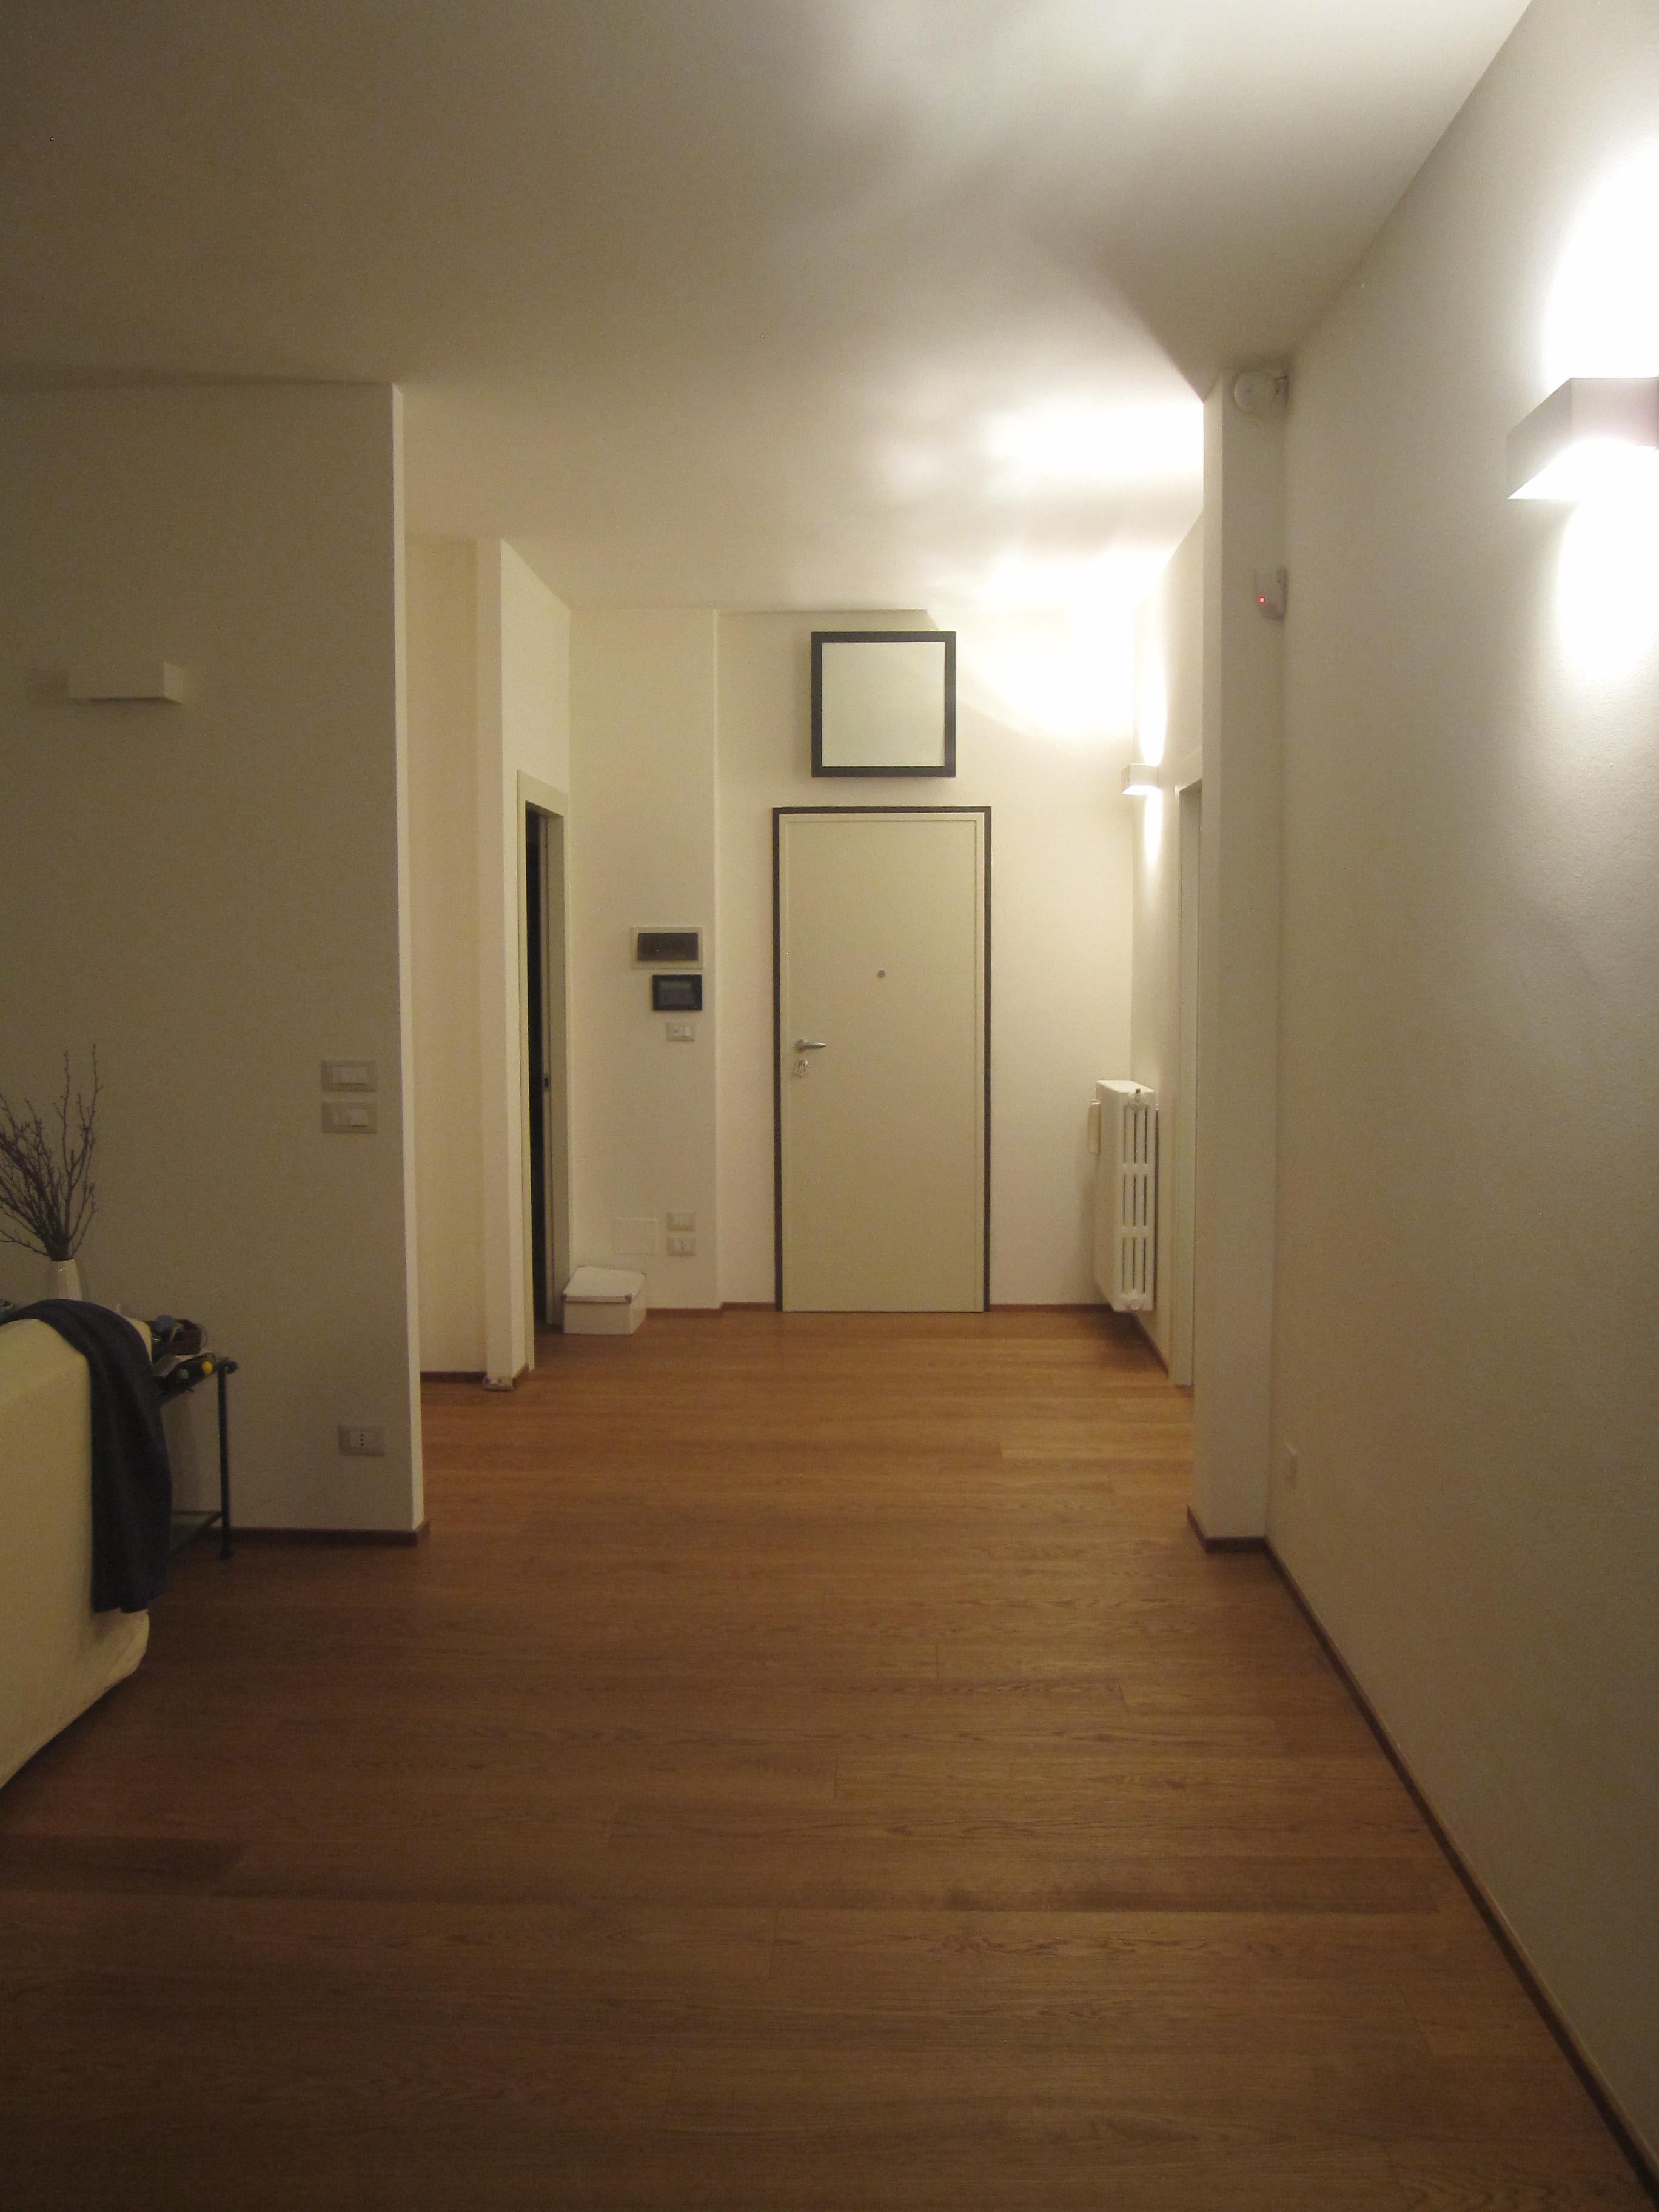 Ristrutturazione appartamenti Torino, ristrutturazione di interni Torino, decorazioni di interni Torino